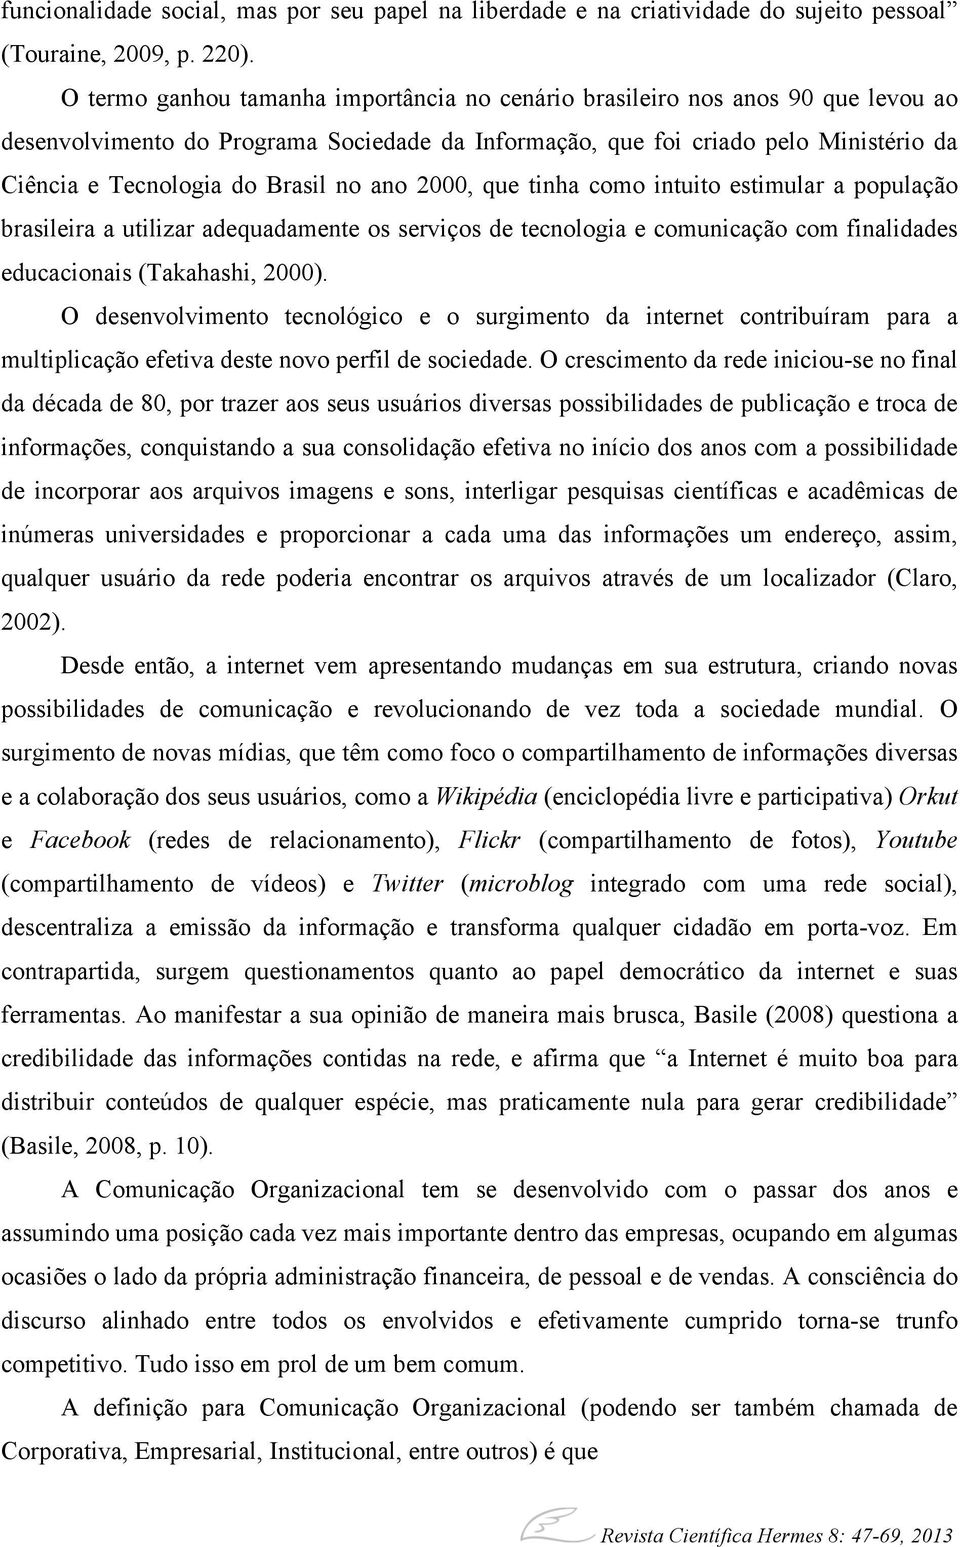 no ano 2000, que tinha como intuito estimular a população brasileira a utilizar adequadamente os serviços de tecnologia e comunicação com finalidades educacionais (Takahashi, 2000).